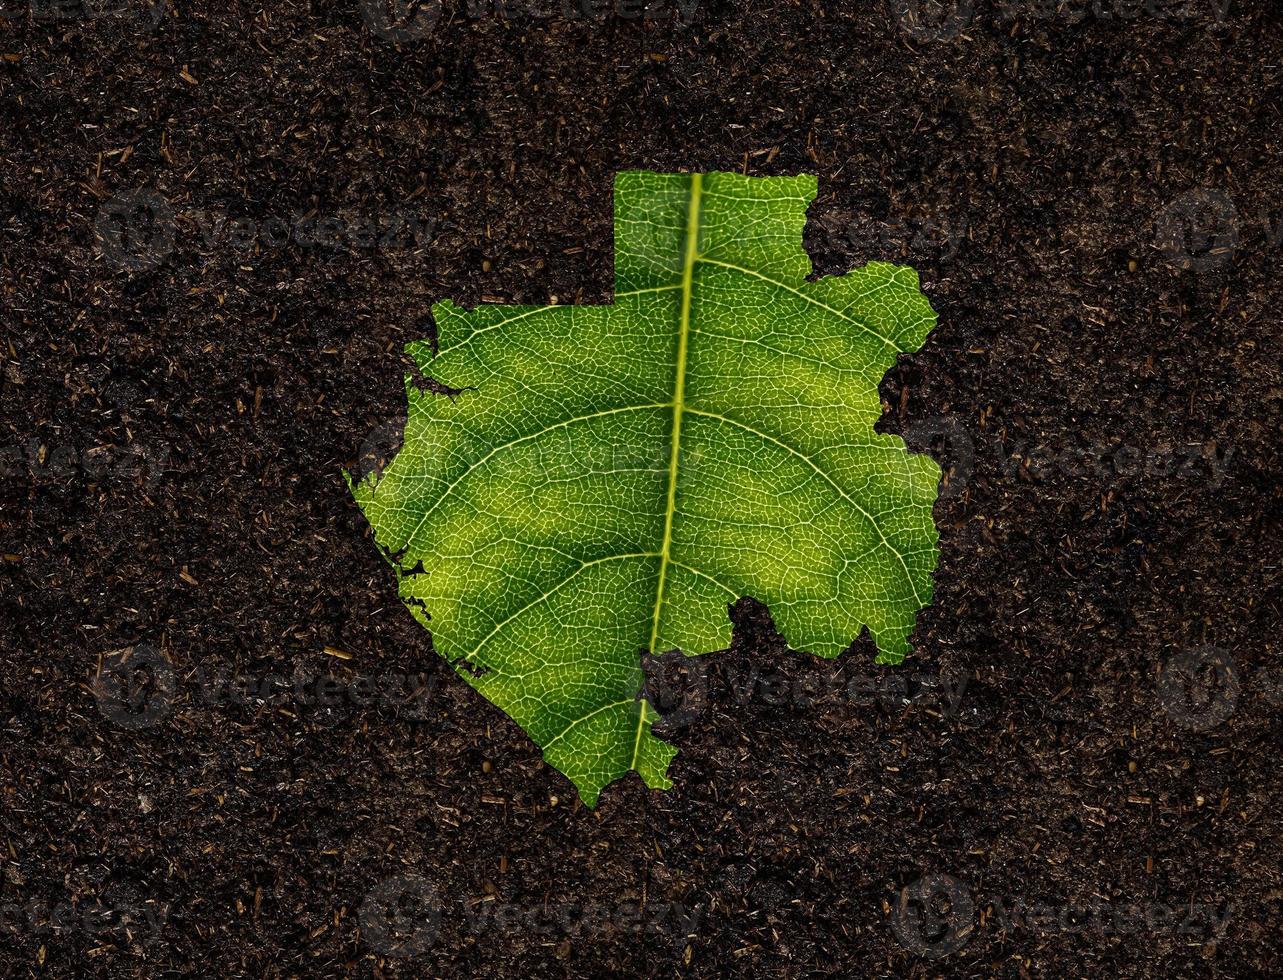 gabon karta gjord av gröna löv, koncept ekologi karta grönt blad på jord bakgrund foto